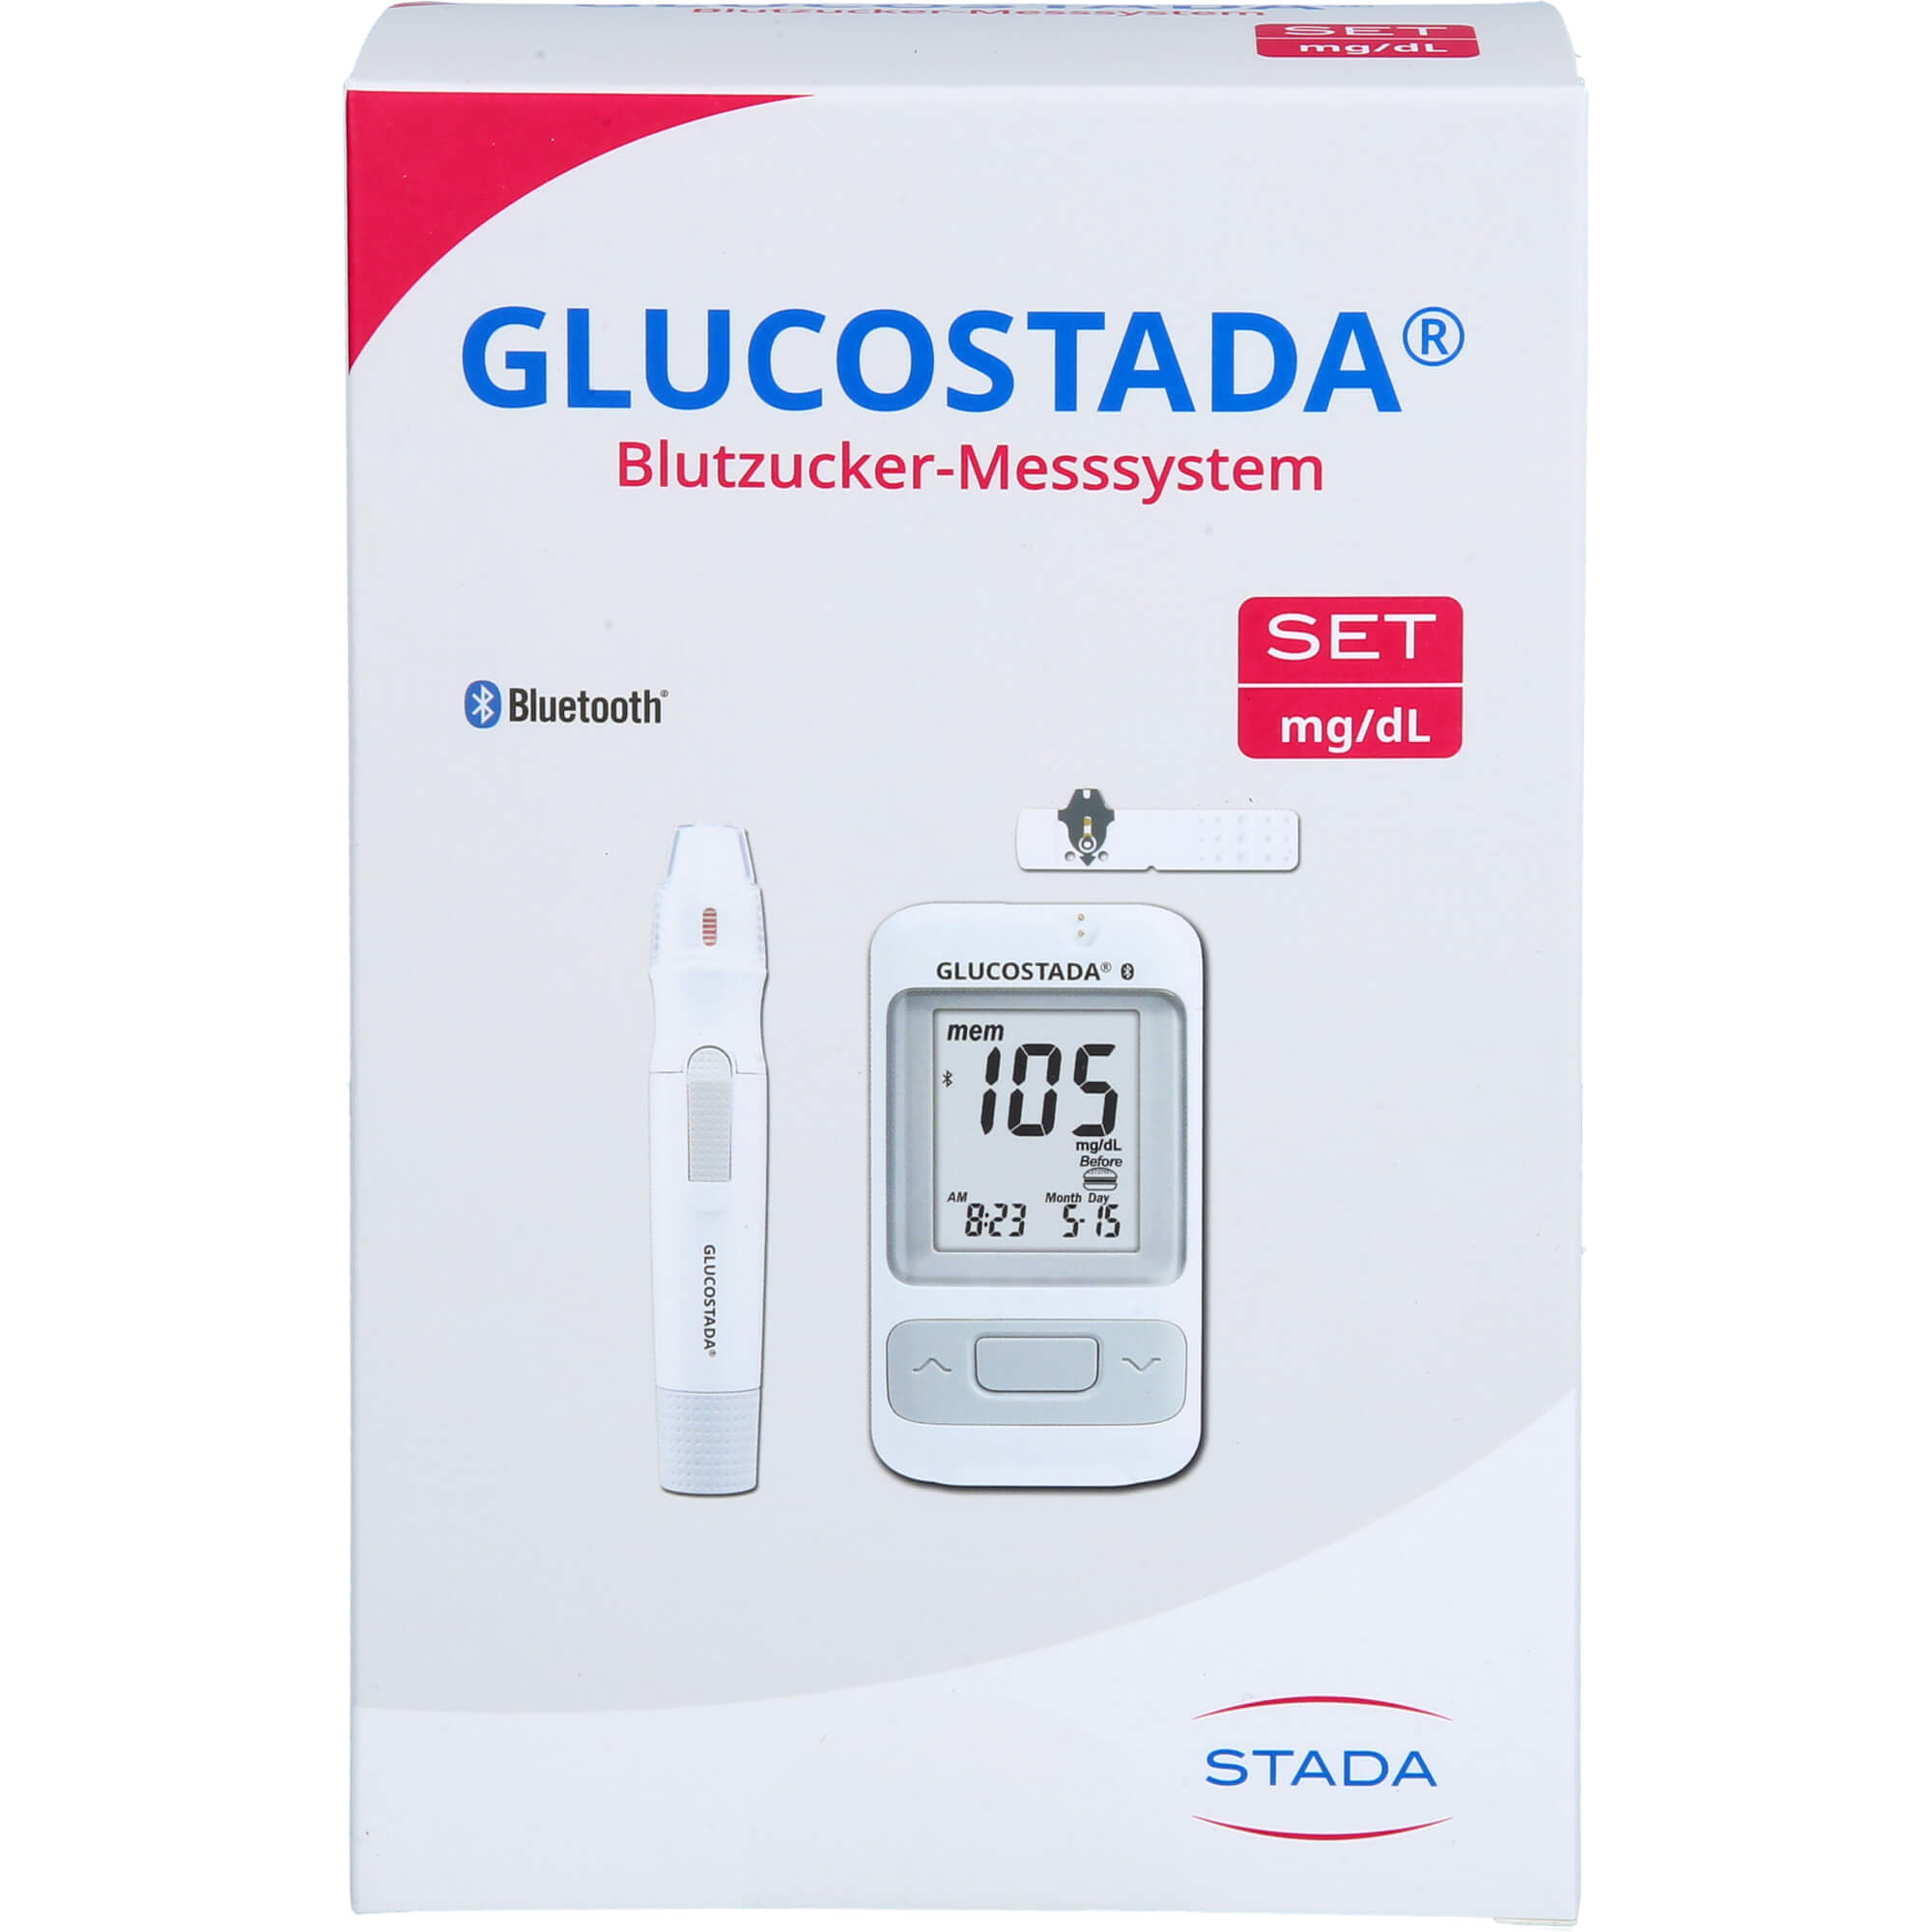 GLUCOSTADA Blutzuckermessgerät mg/dl